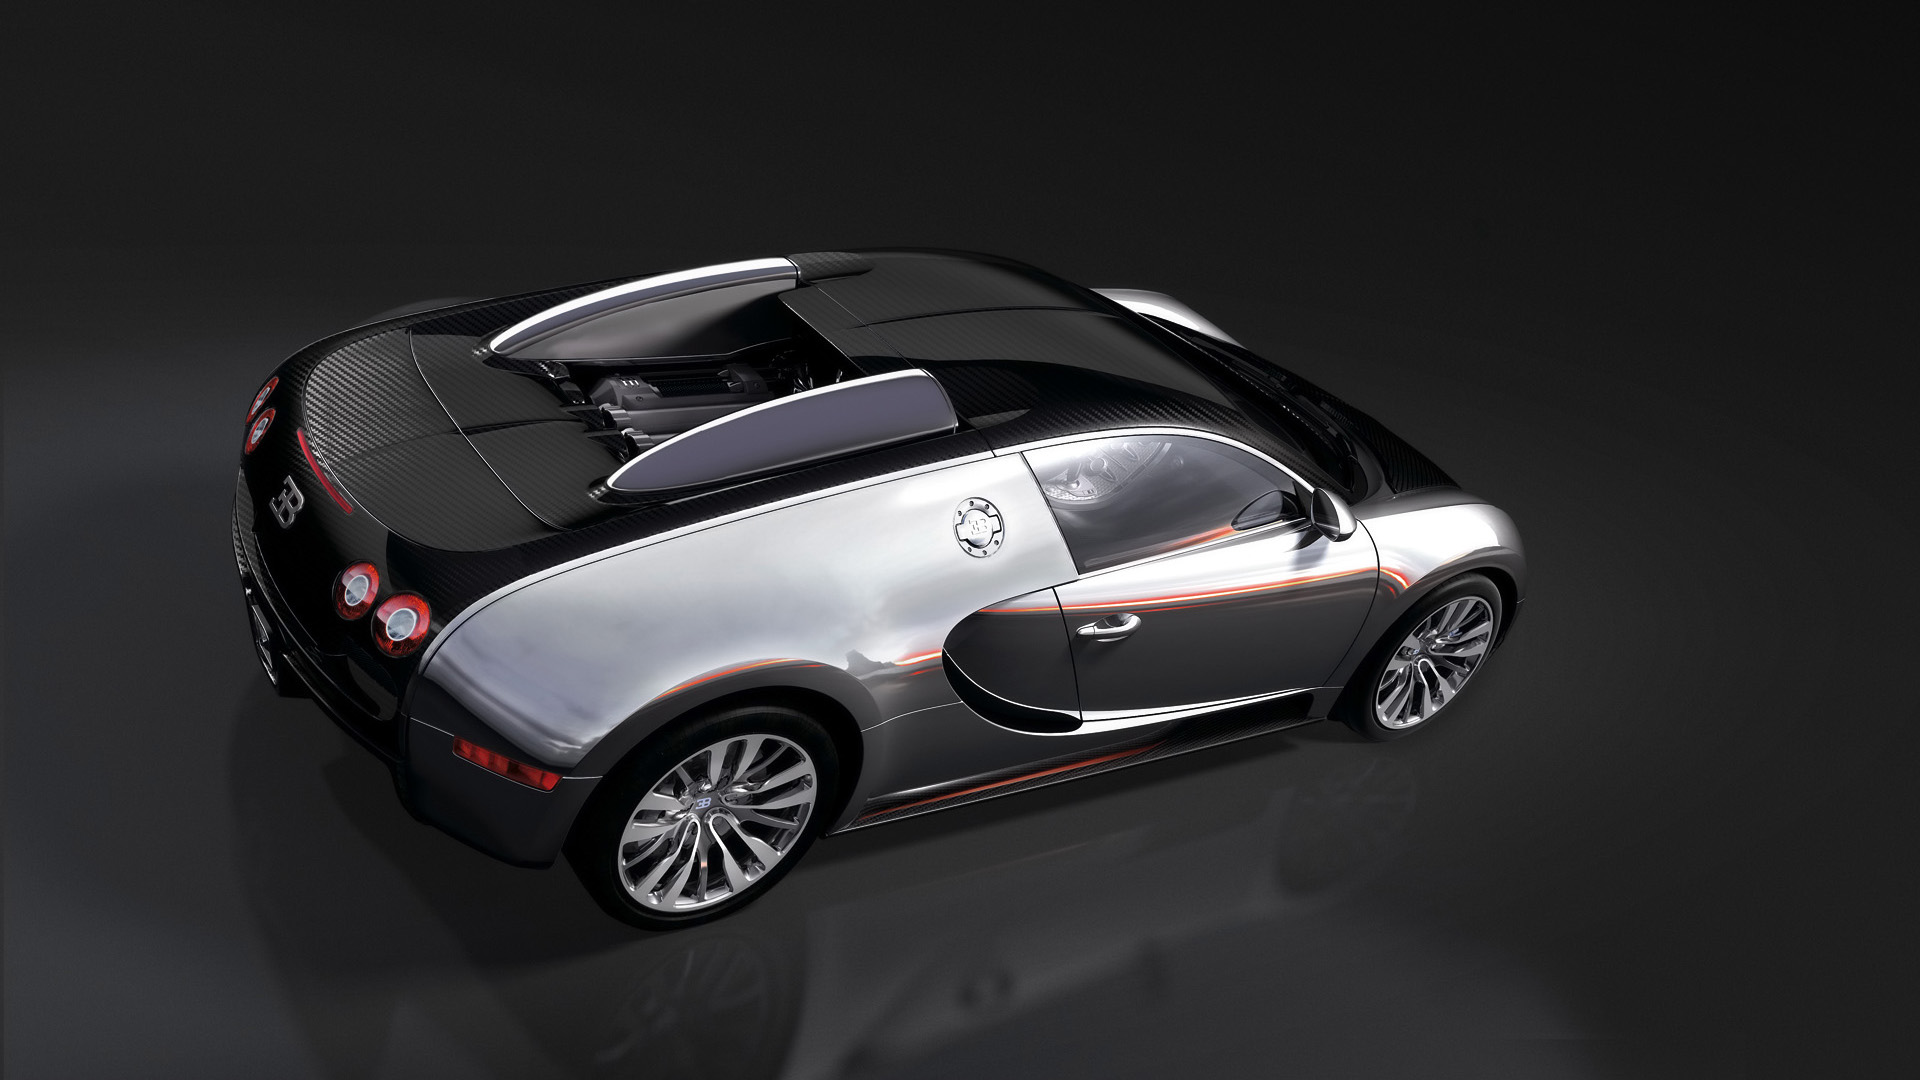  2008 Bugatti Veyron Pur Sang Wallpaper.